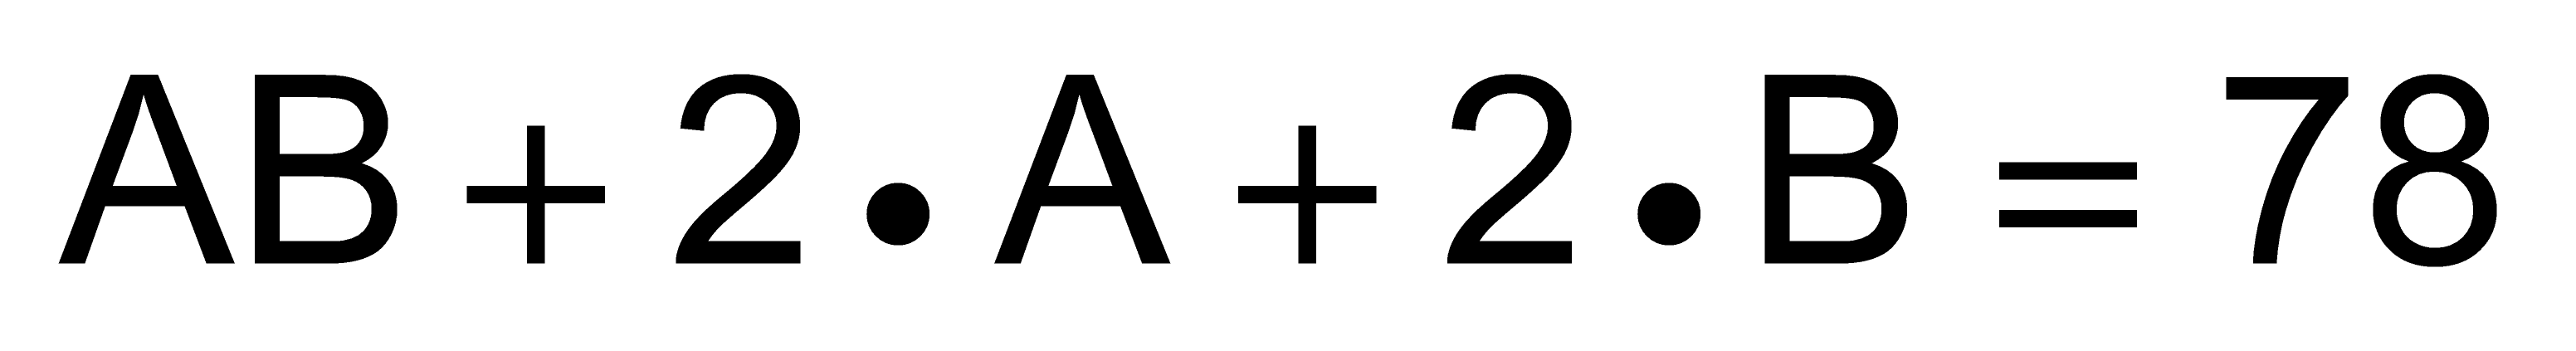 Bu koşulu sağlayan en büyük AB sayısının rakamları toplamı kaçtır? 13 14 C) 15 16 17 14. AB iki basamaklı bir doğal sayı olmak üzere 16.